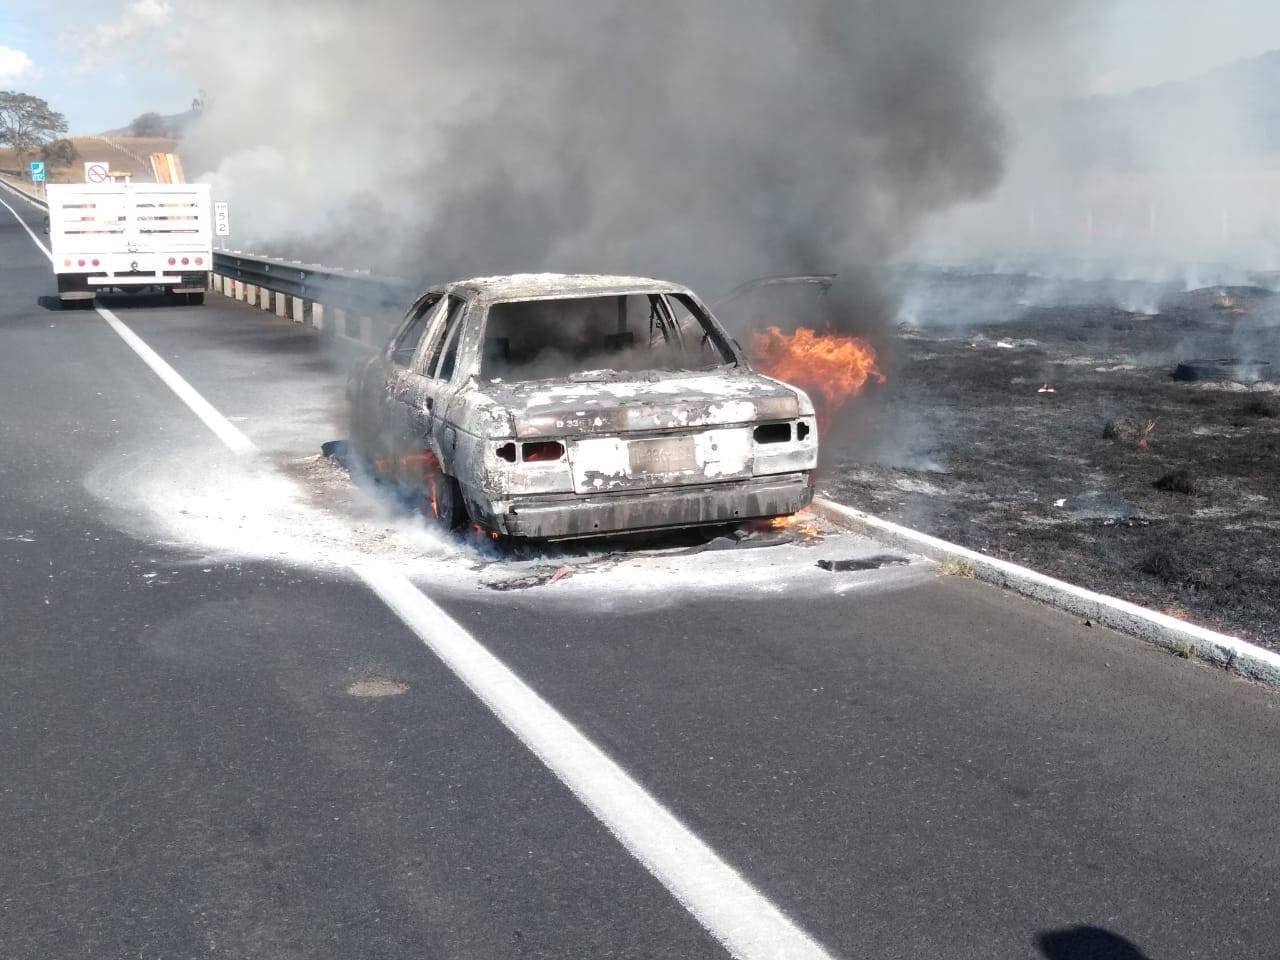 Taxi se incendia en la carretera Pátzcuaro-Cuitzeo